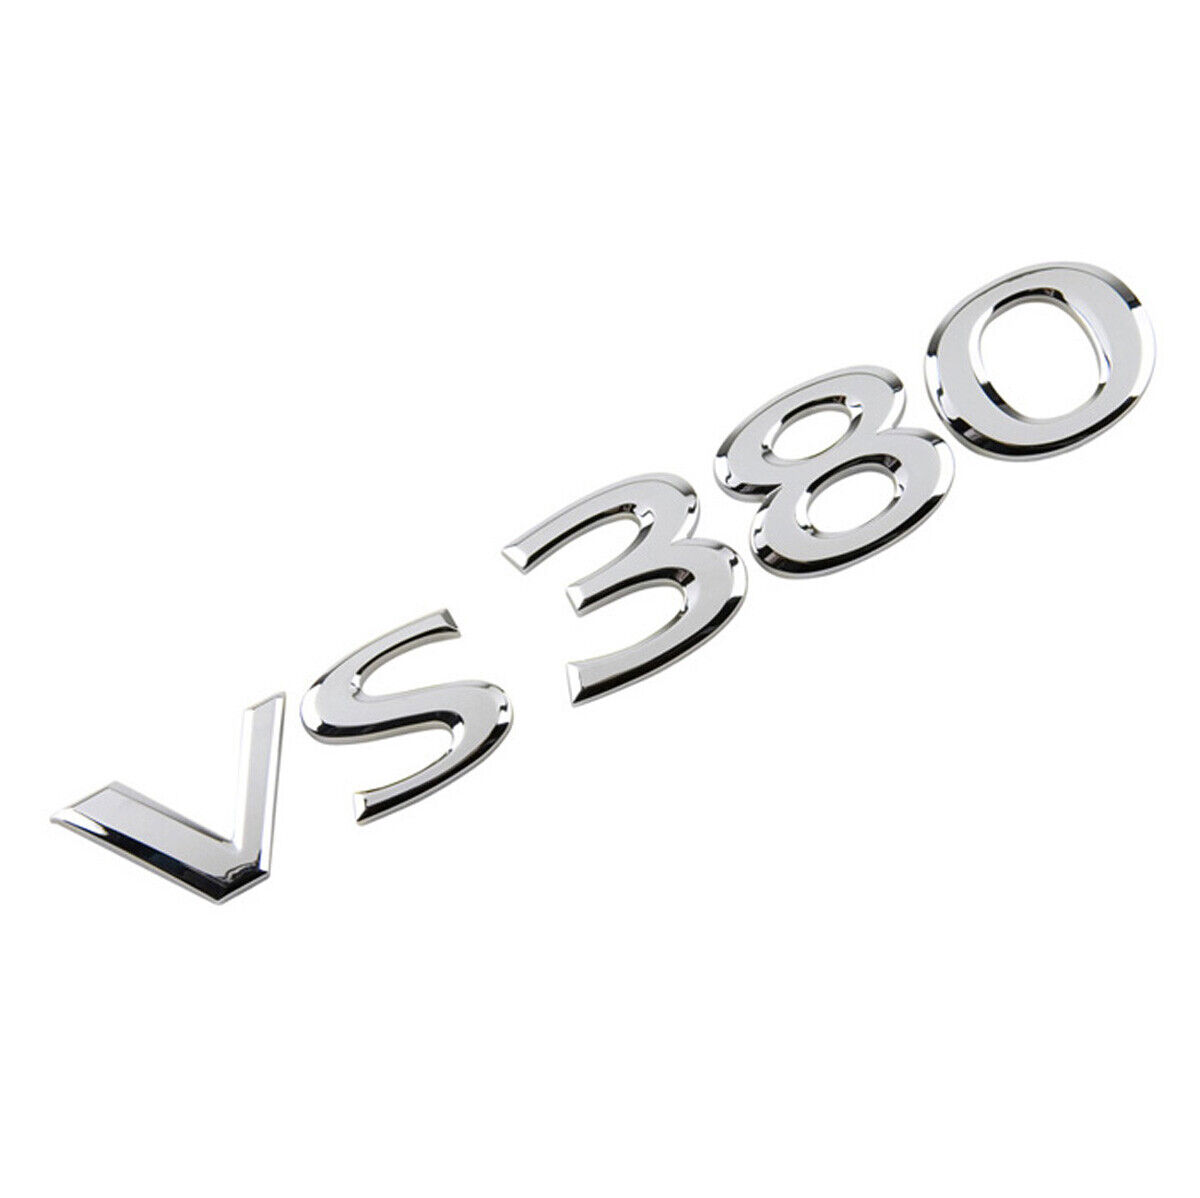 Genuine 2010-2015 EQUUS VS380 Emblem Badge 86311-3N000 CHROME for Hyundai